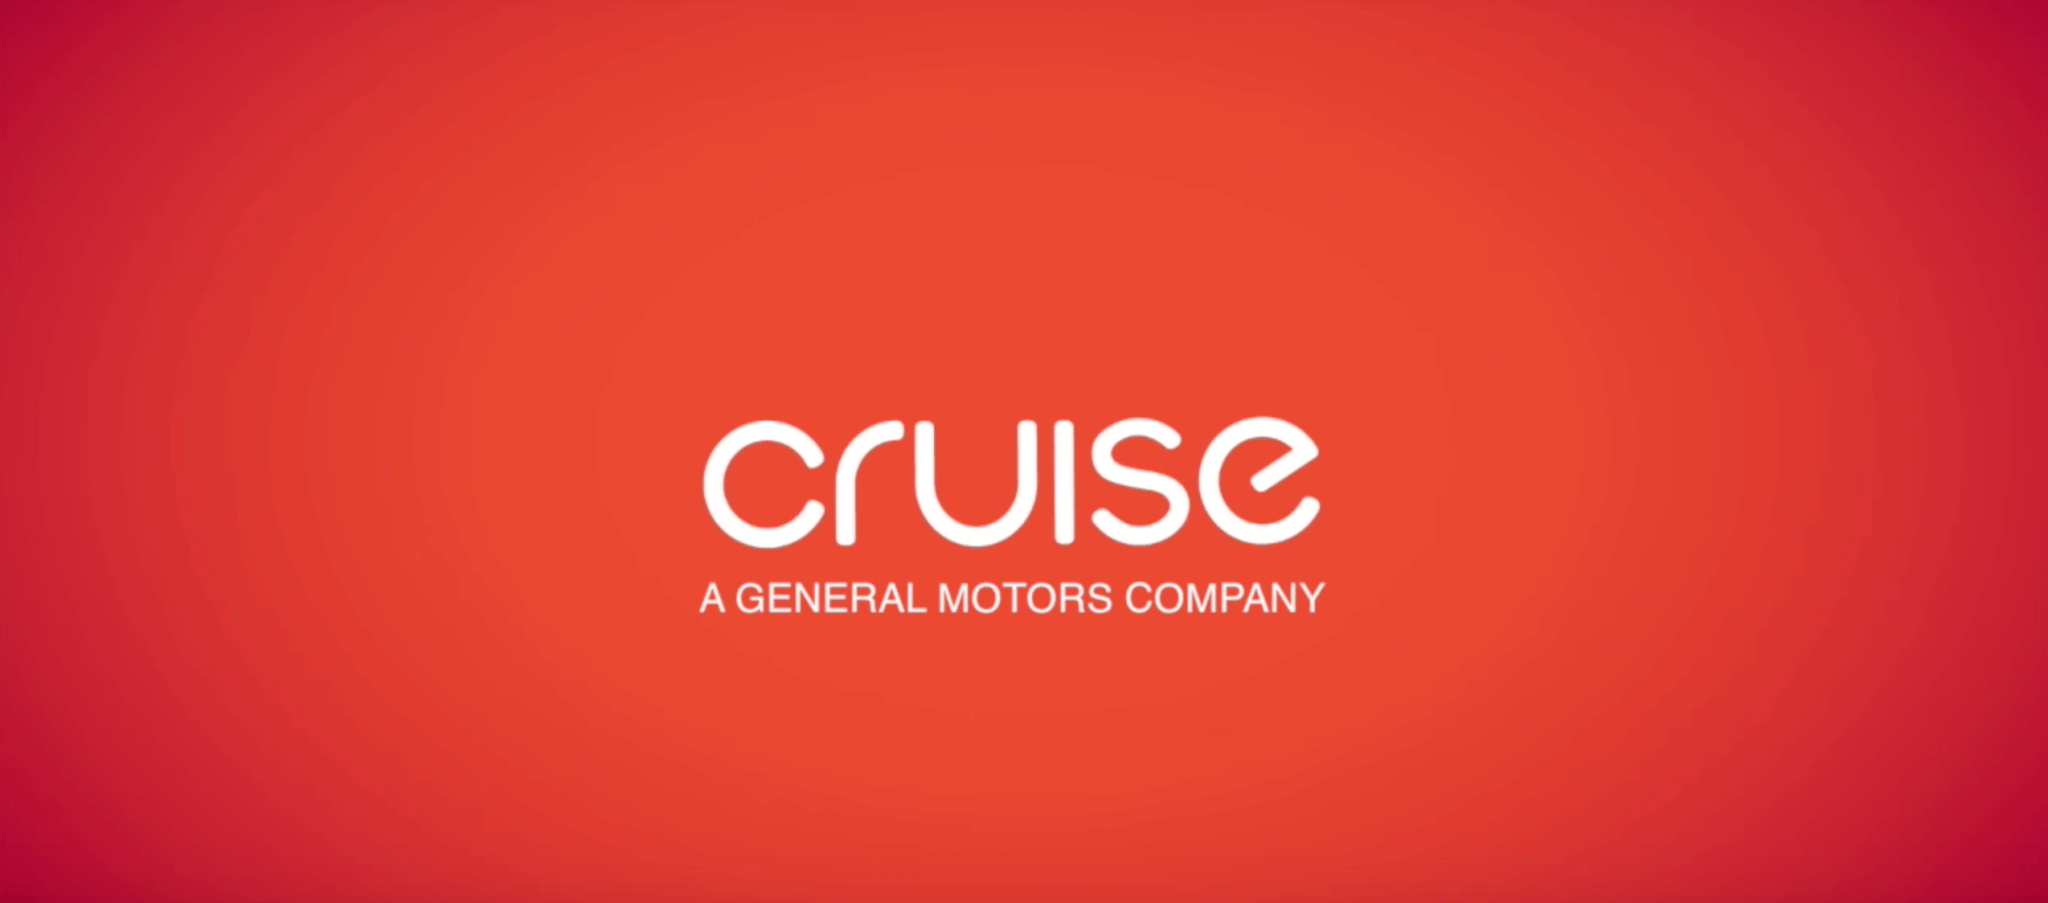 car cruise logo